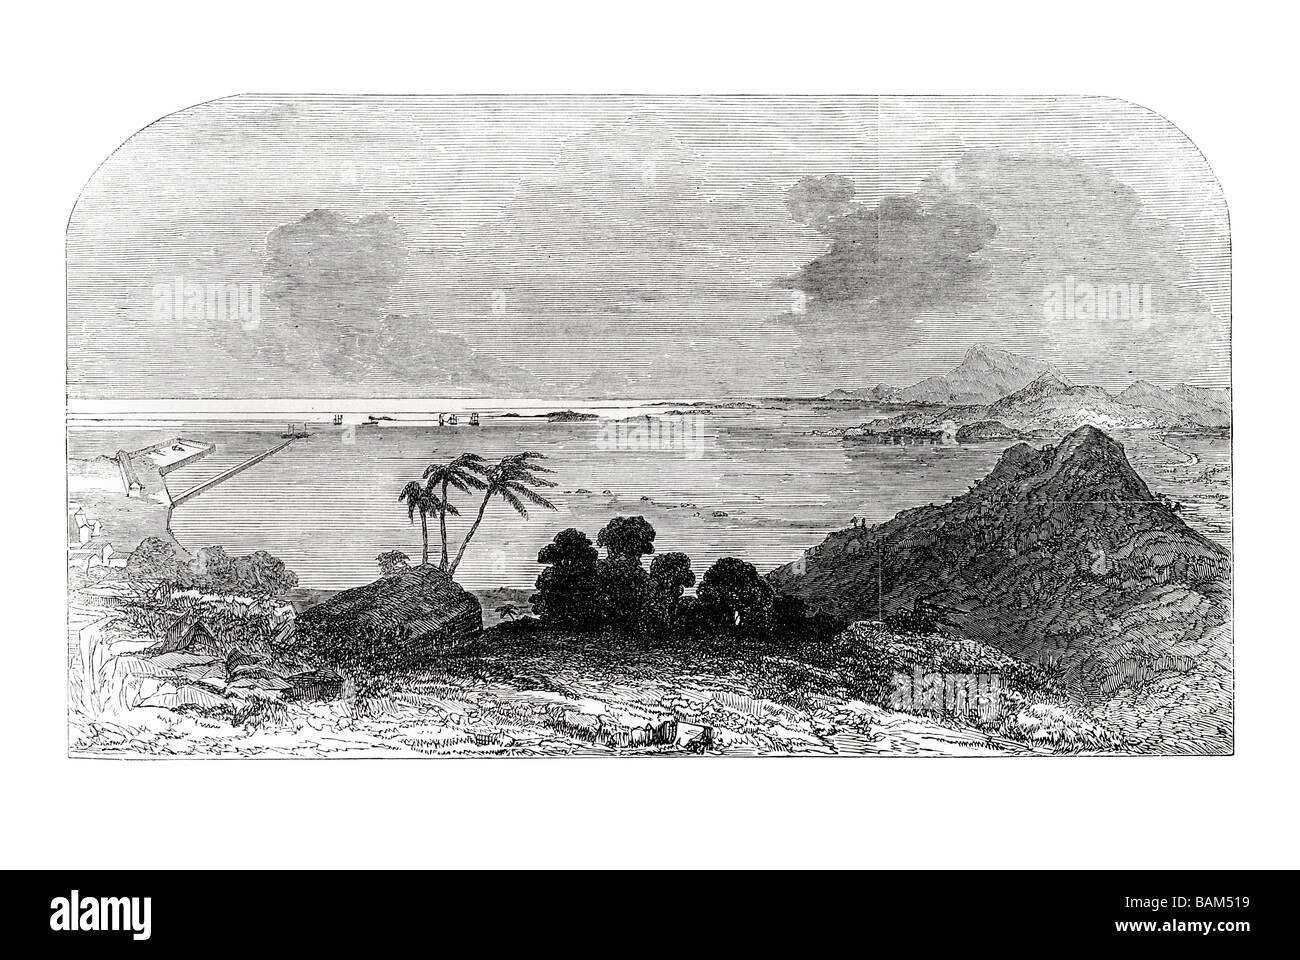 Bucht und Hafen von Panama 1851 Hafen Küste Dock Segel Segelboot Wind Schiff Wellen Golf Stockfoto